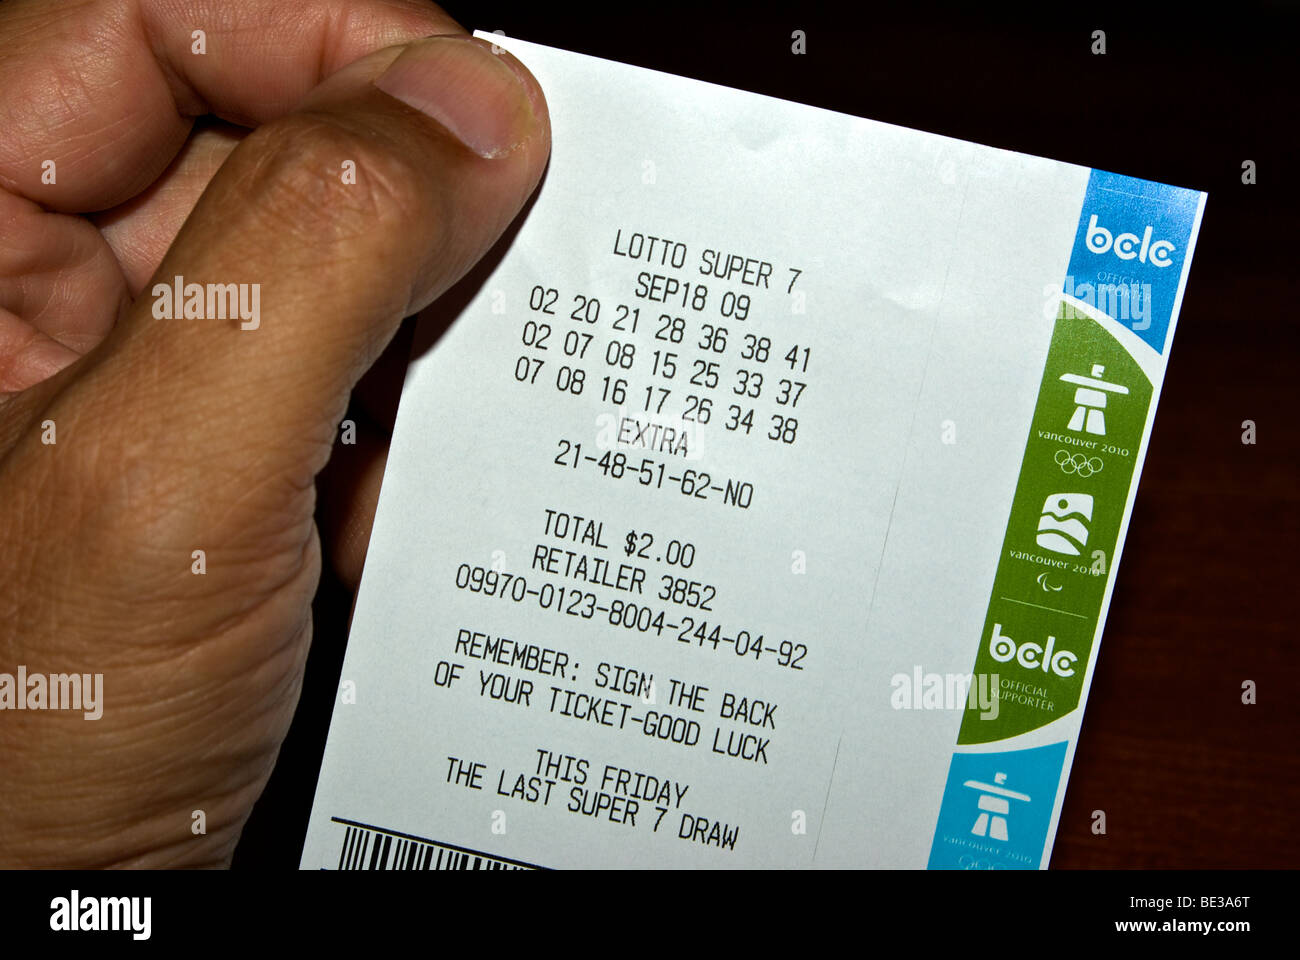 Am Ende von einem kanadischen Lotteriespiel - endgültige Auslosung der Lotto Super7 Freitag, 18. September 2009 Stockfoto